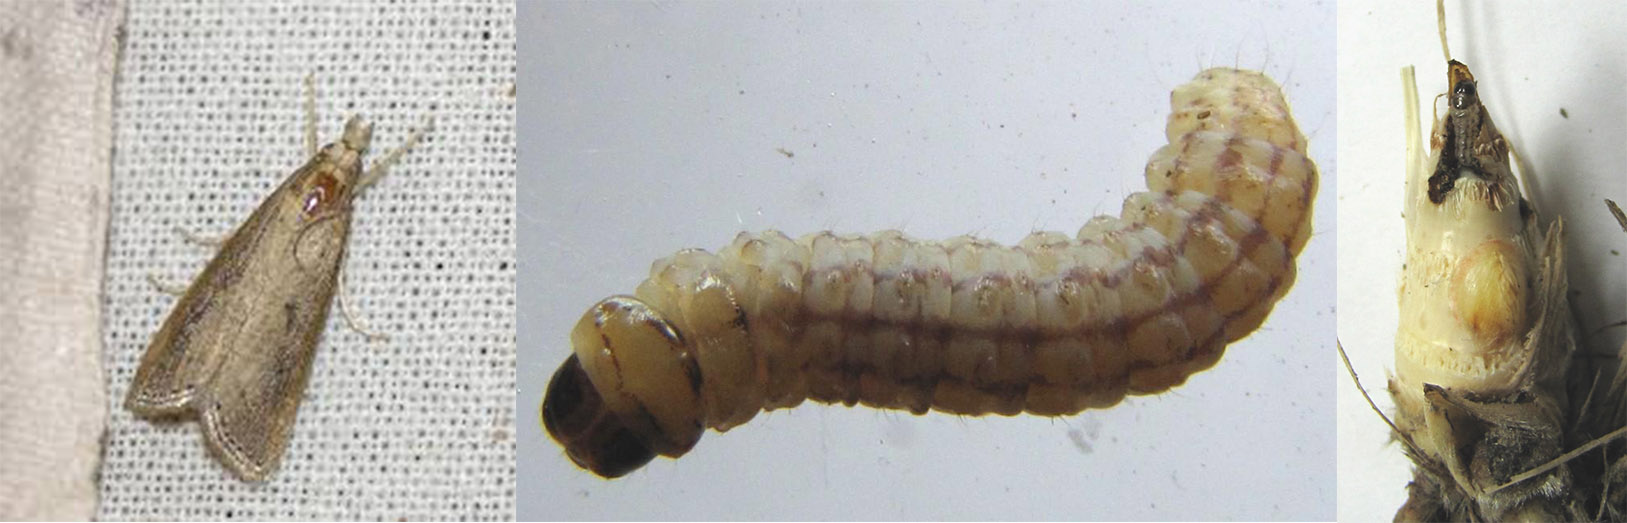 Sugarcane Stem Borer moth, larva, and in stem